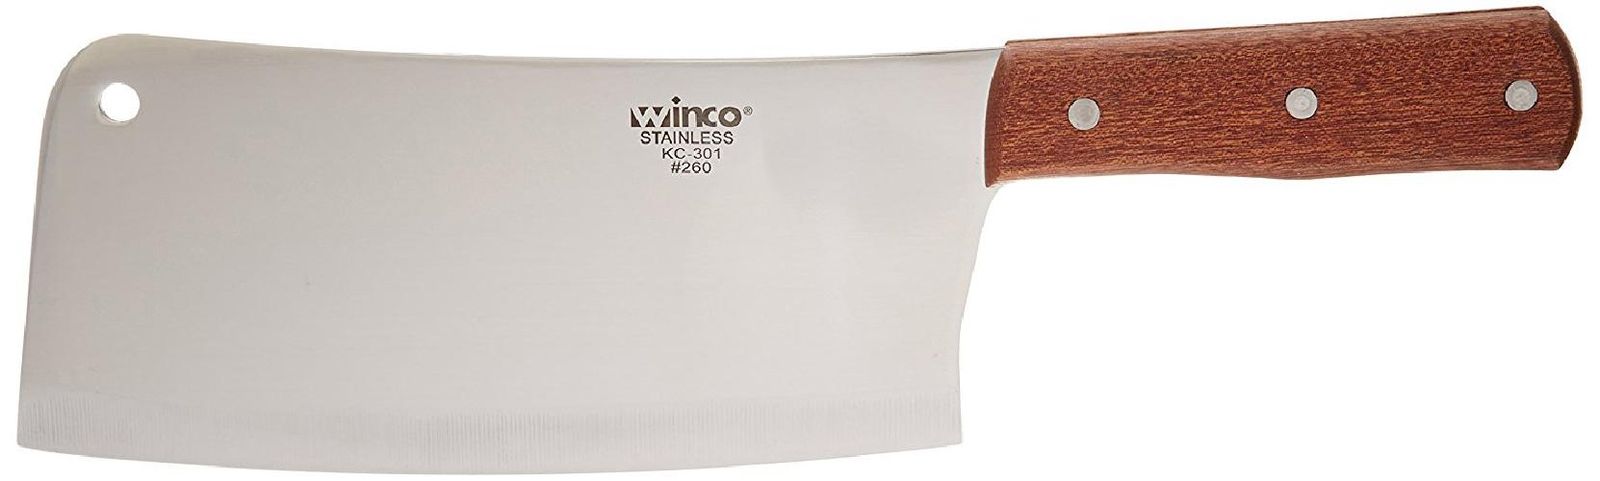 Winco 8-inch